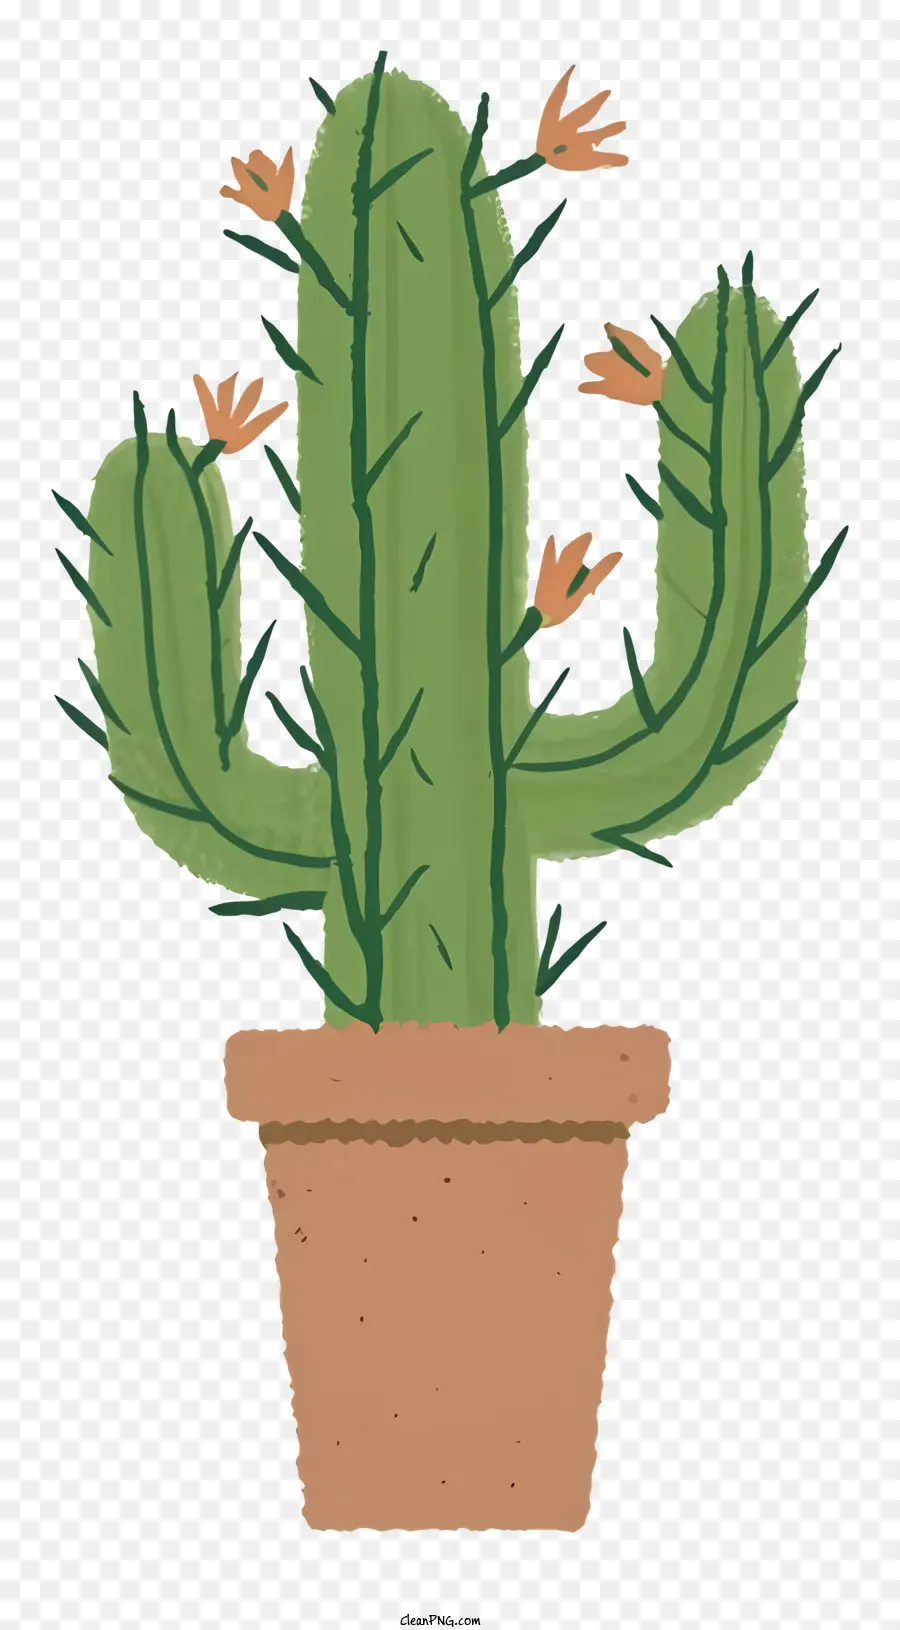 Cartoon Kaktus pflanzen gesunde kaktusgrüne Blätter kleine Knospen - Gesunder brauner Kaktus mit grünen Blättern und Knospen